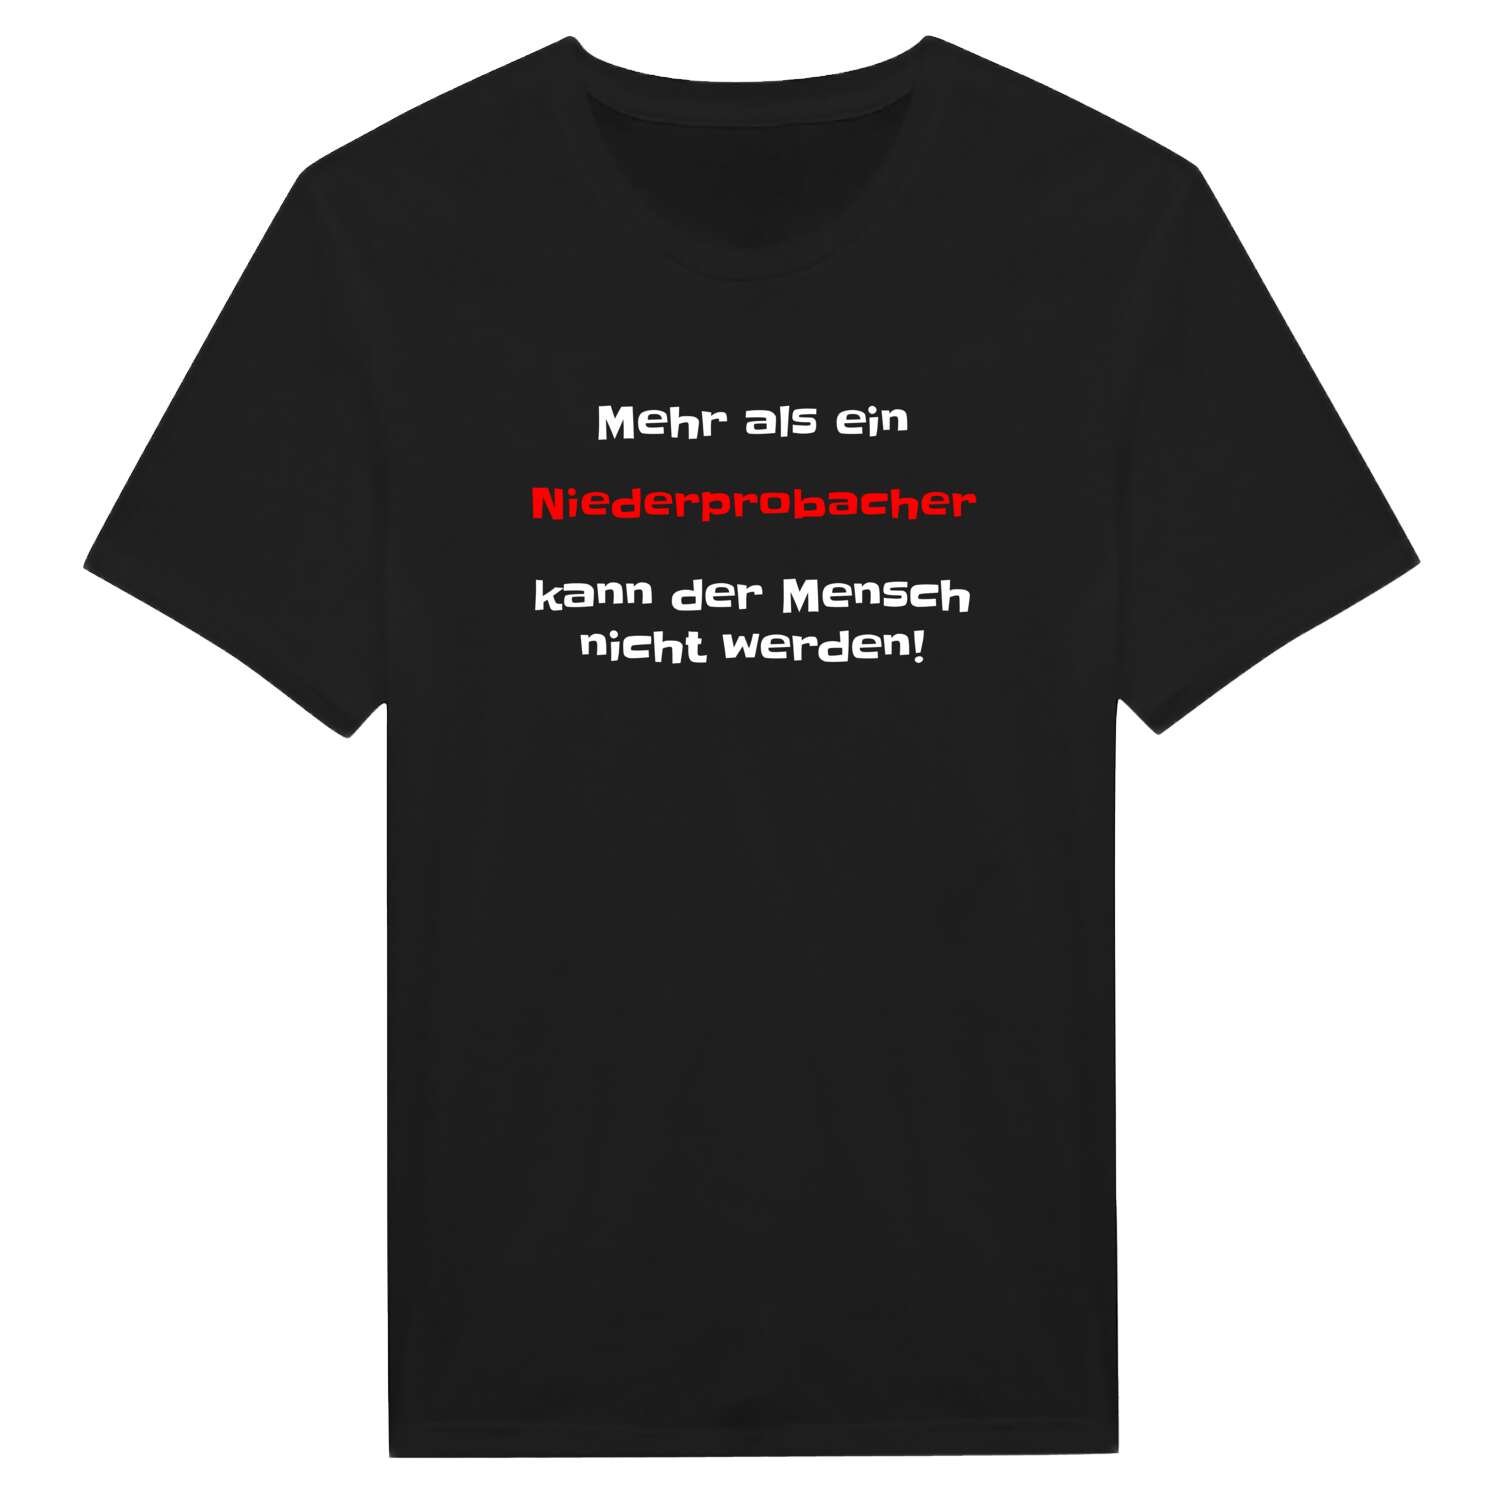 Niederprobach T-Shirt »Mehr als ein«